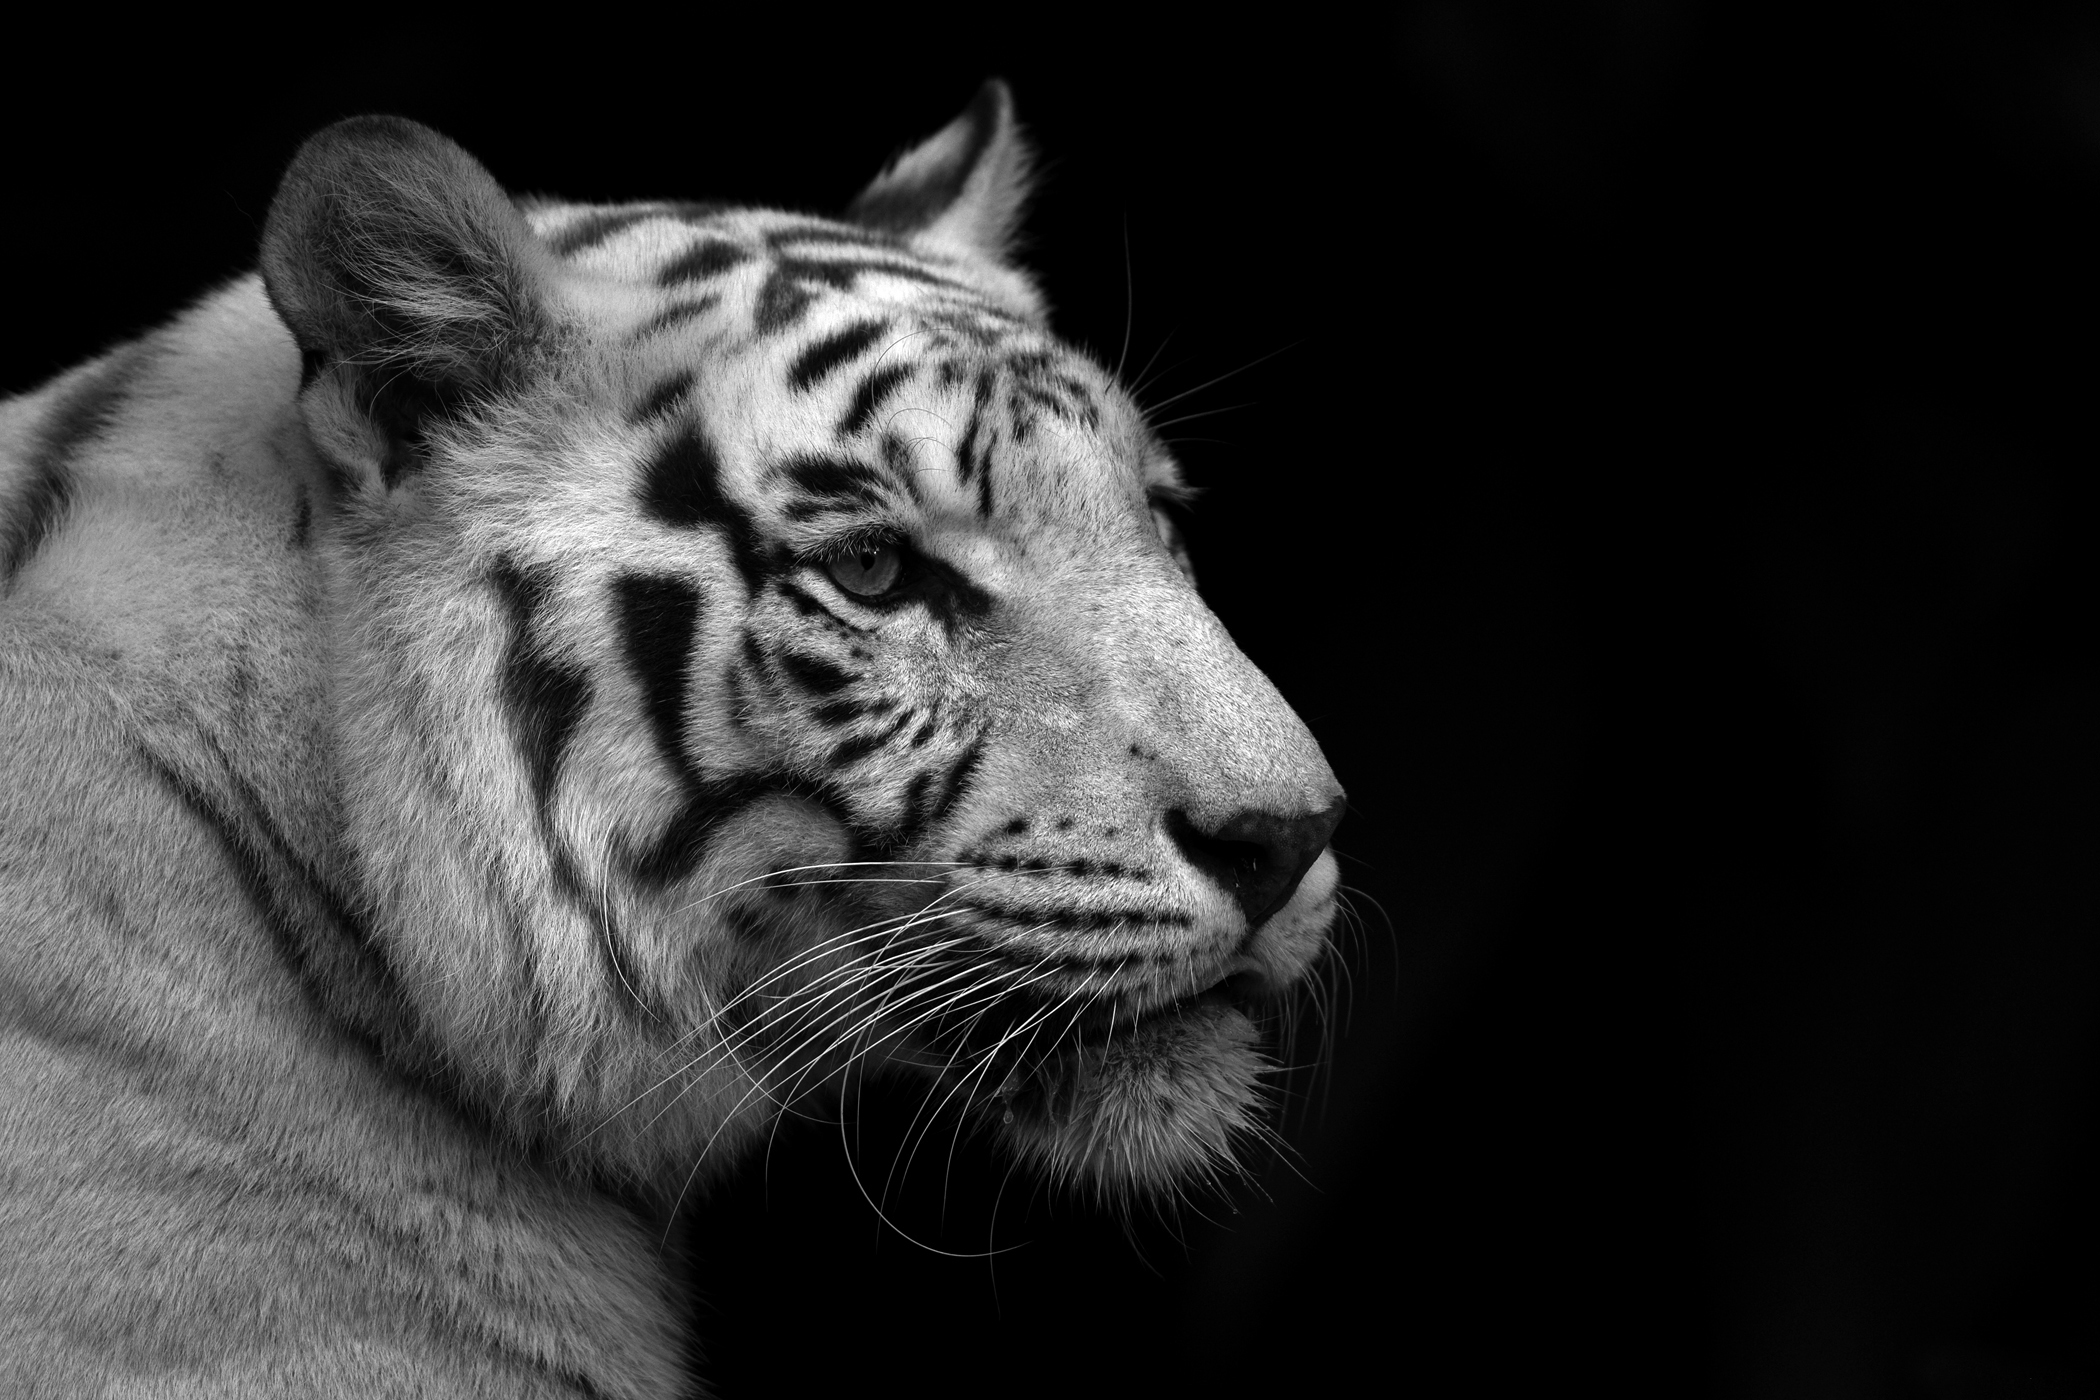 tiger white black background black and white wallpaperjpg 2100x1400